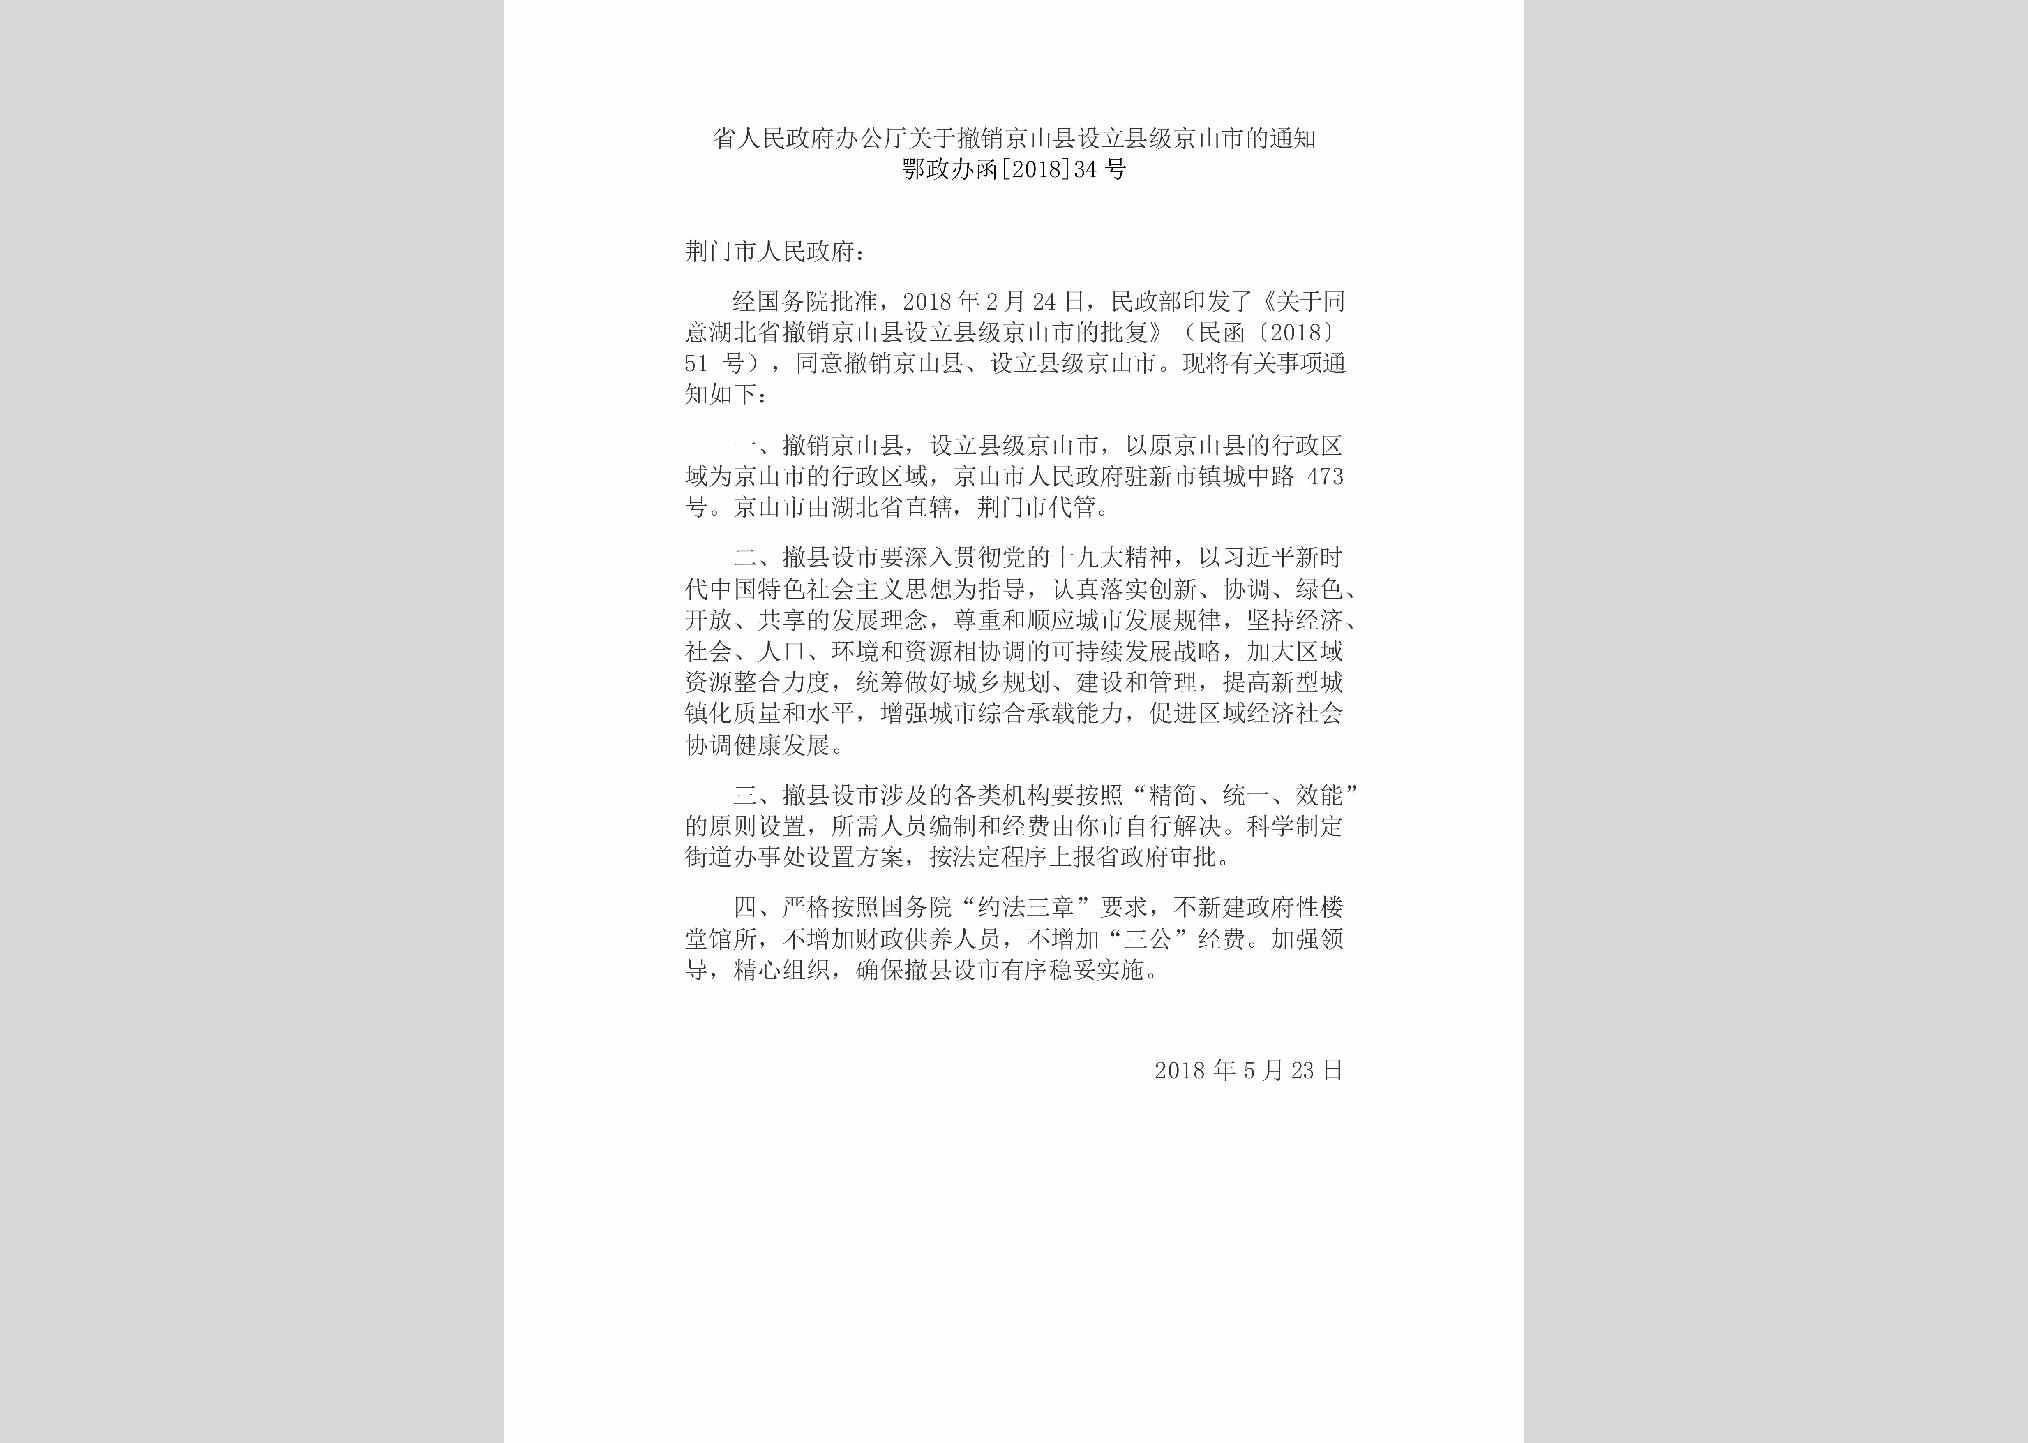 鄂政办函[2018]34号：省人民政府办公厅关于撤销京山县设立县级京山市的通知